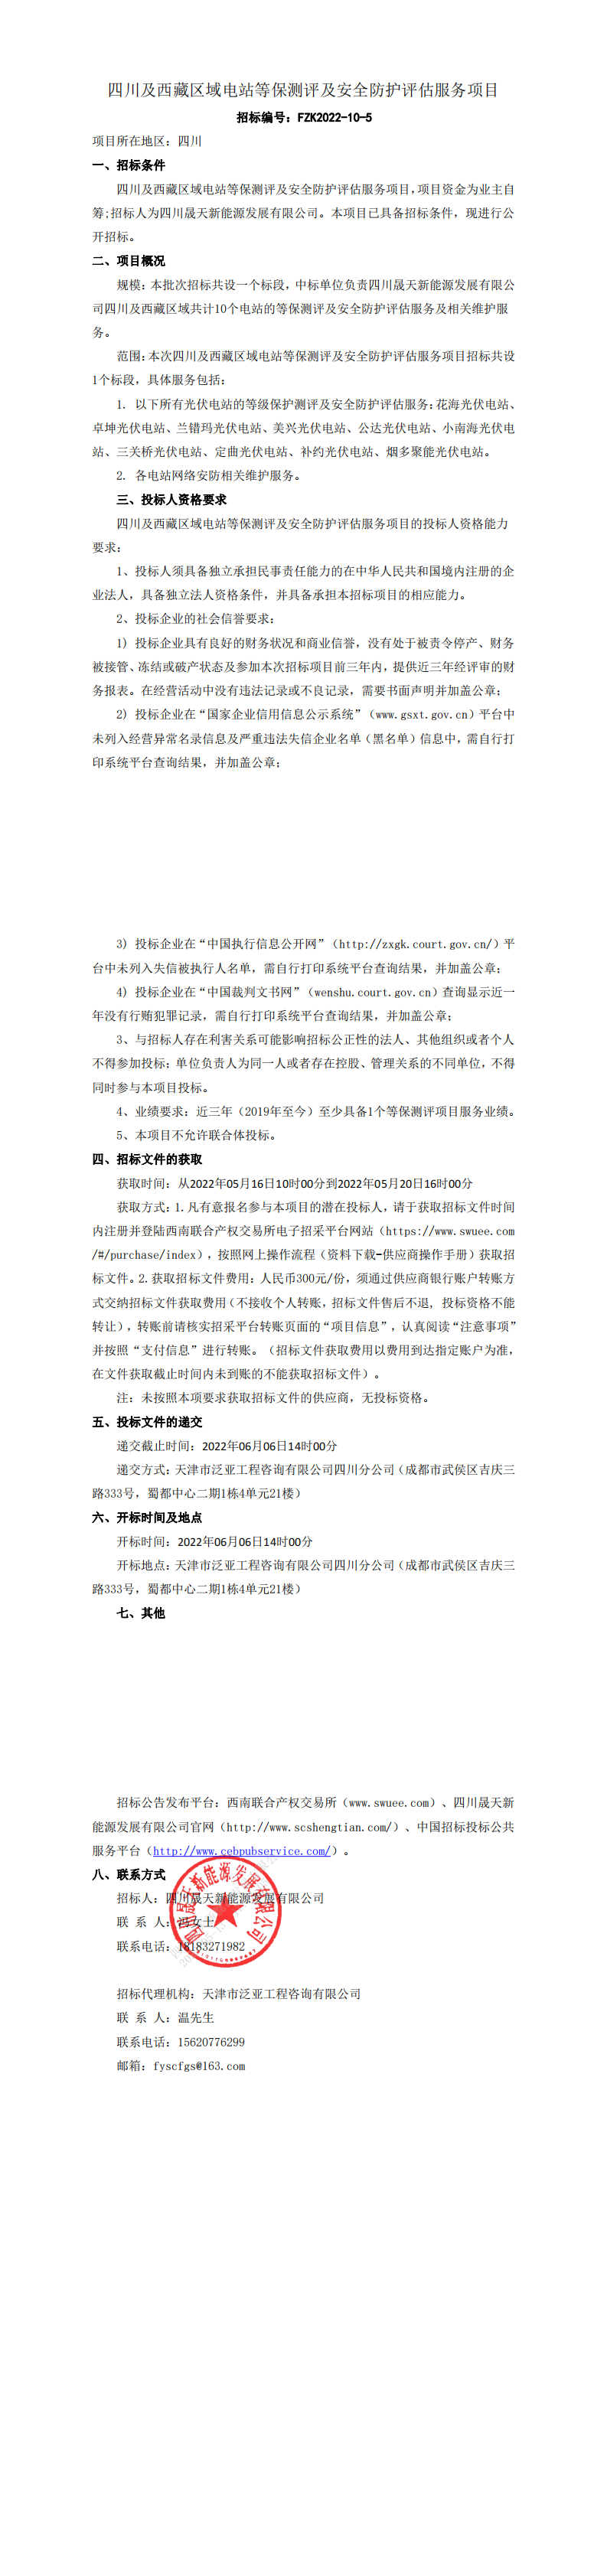 四川及西藏区域电站等保测评及安全防护评估服务项目公告(1)(1)(1)(1)_0.png